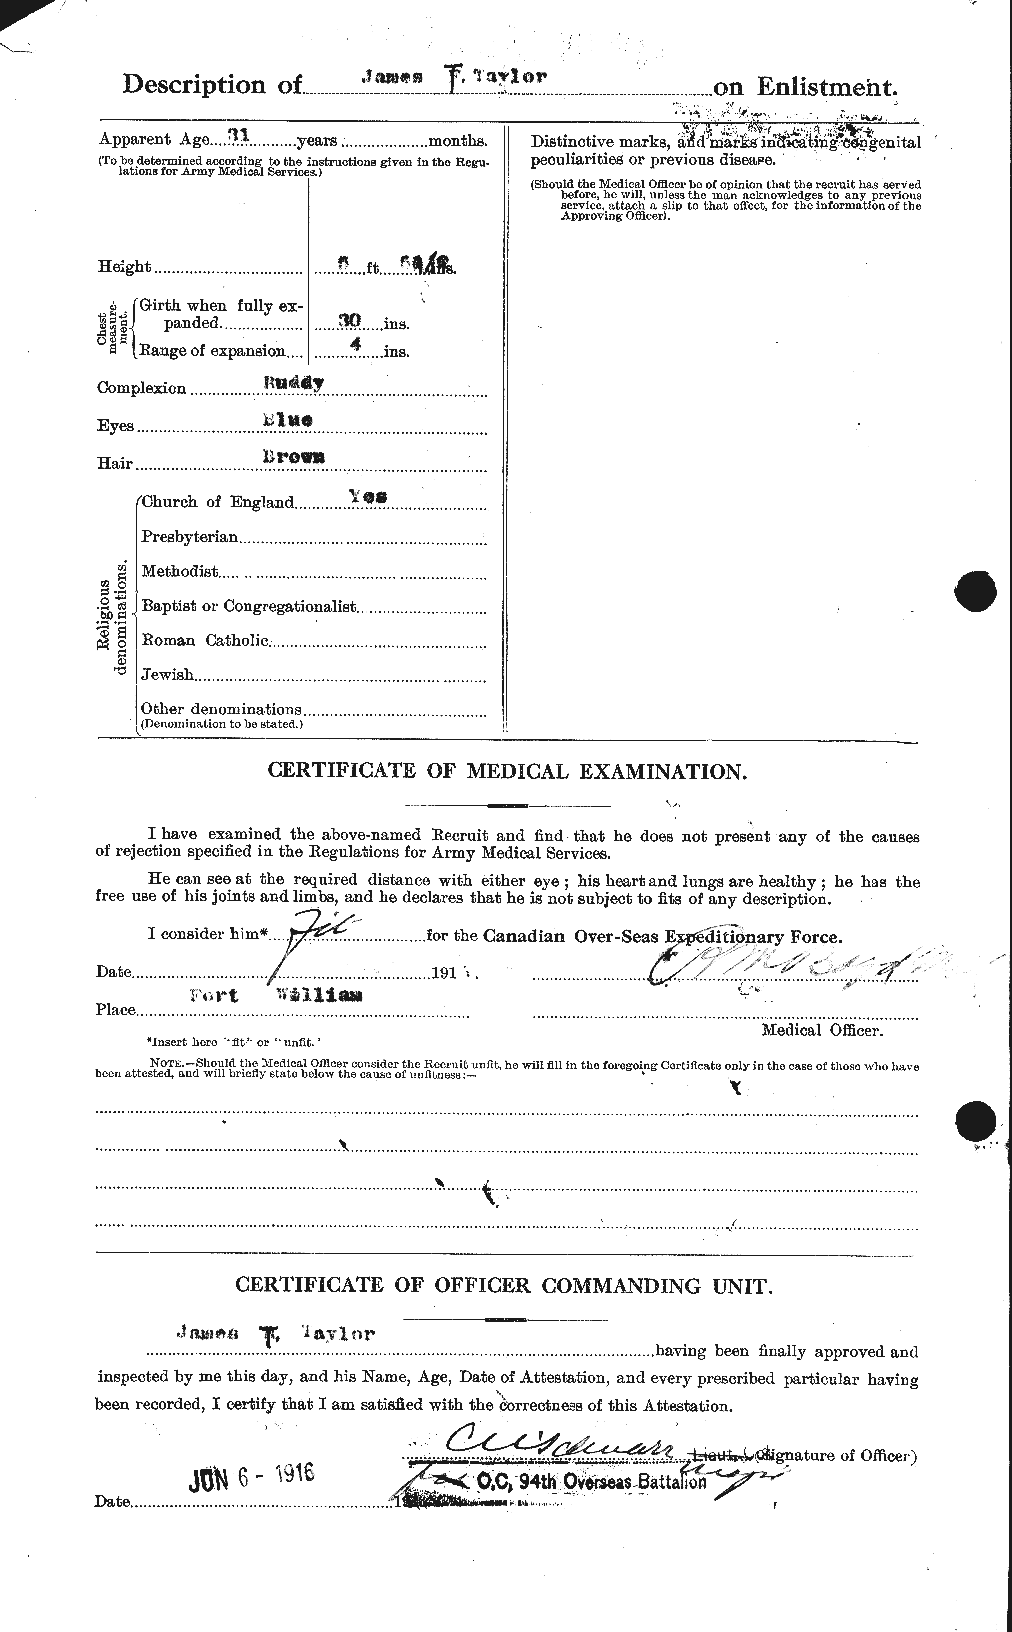 Dossiers du Personnel de la Première Guerre mondiale - CEC 626960b